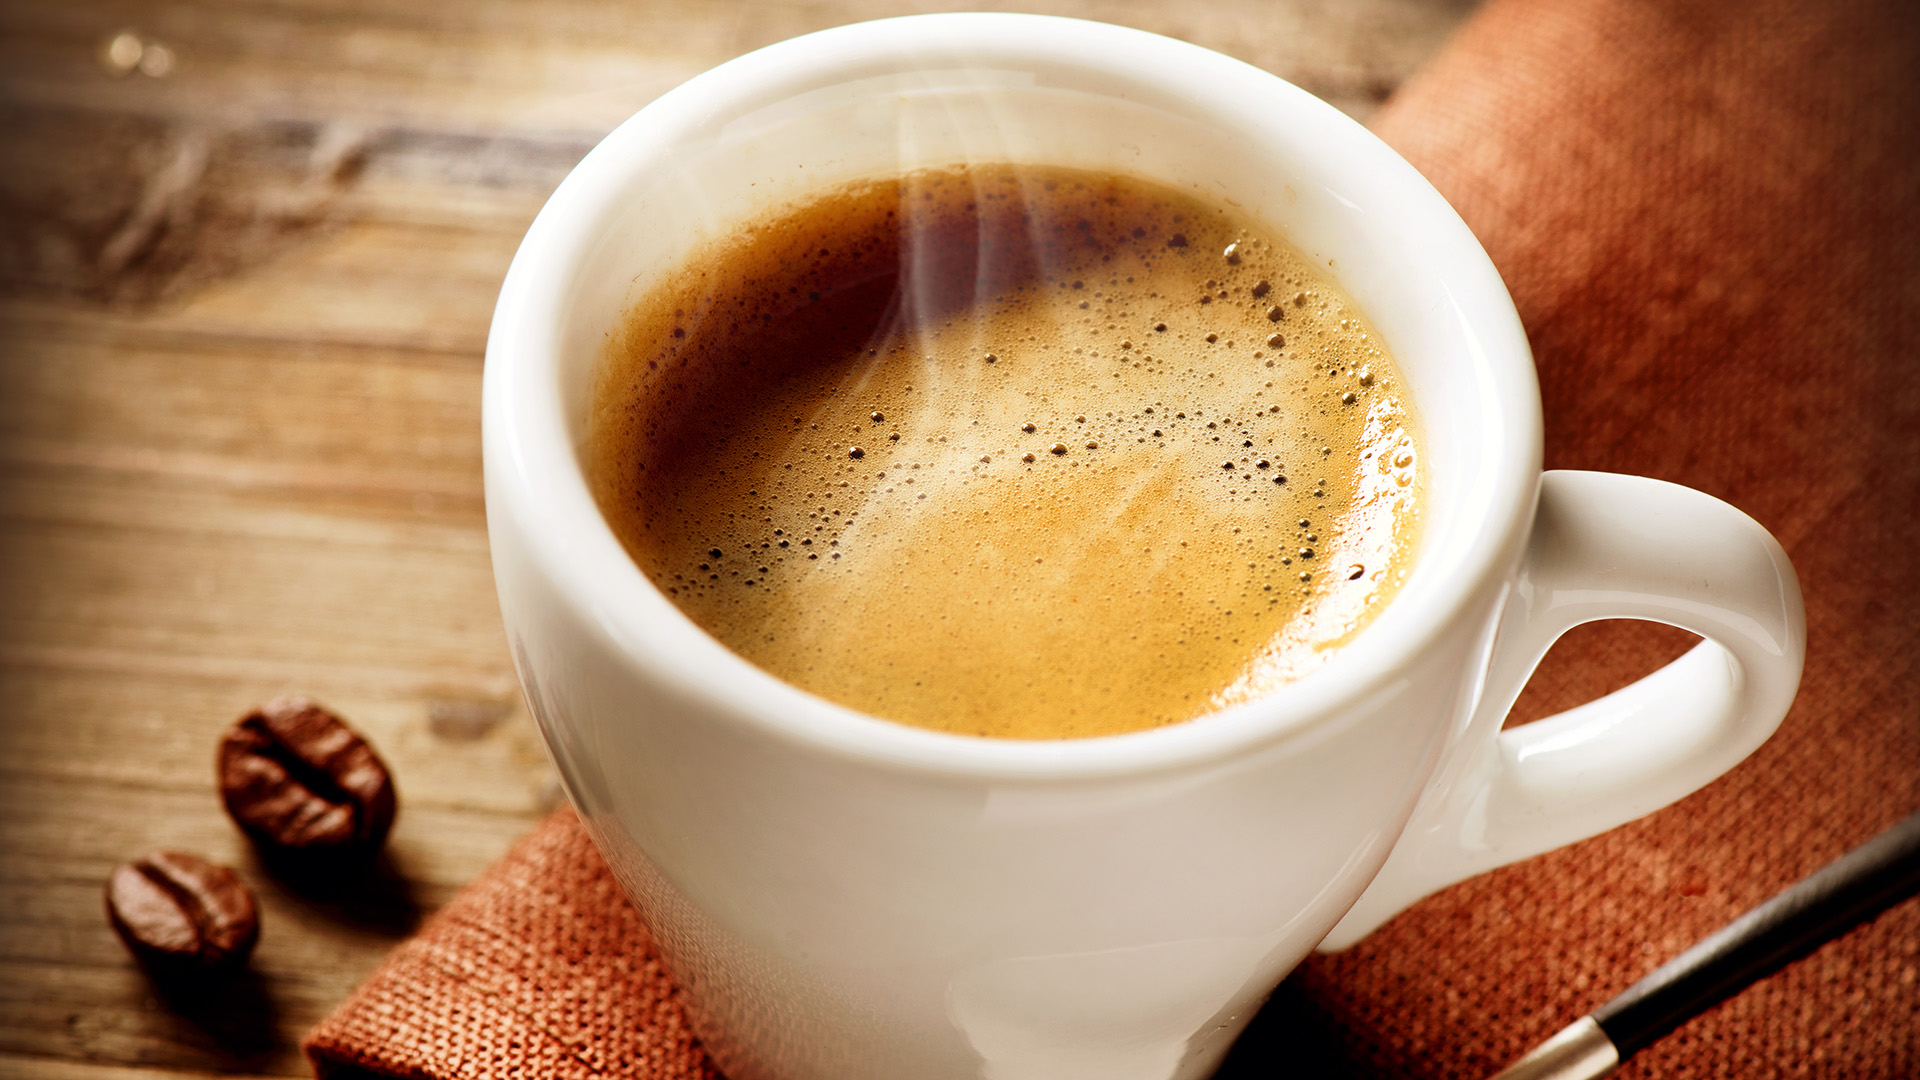 Une tasse de café chaud, une cuillère et des grains de café